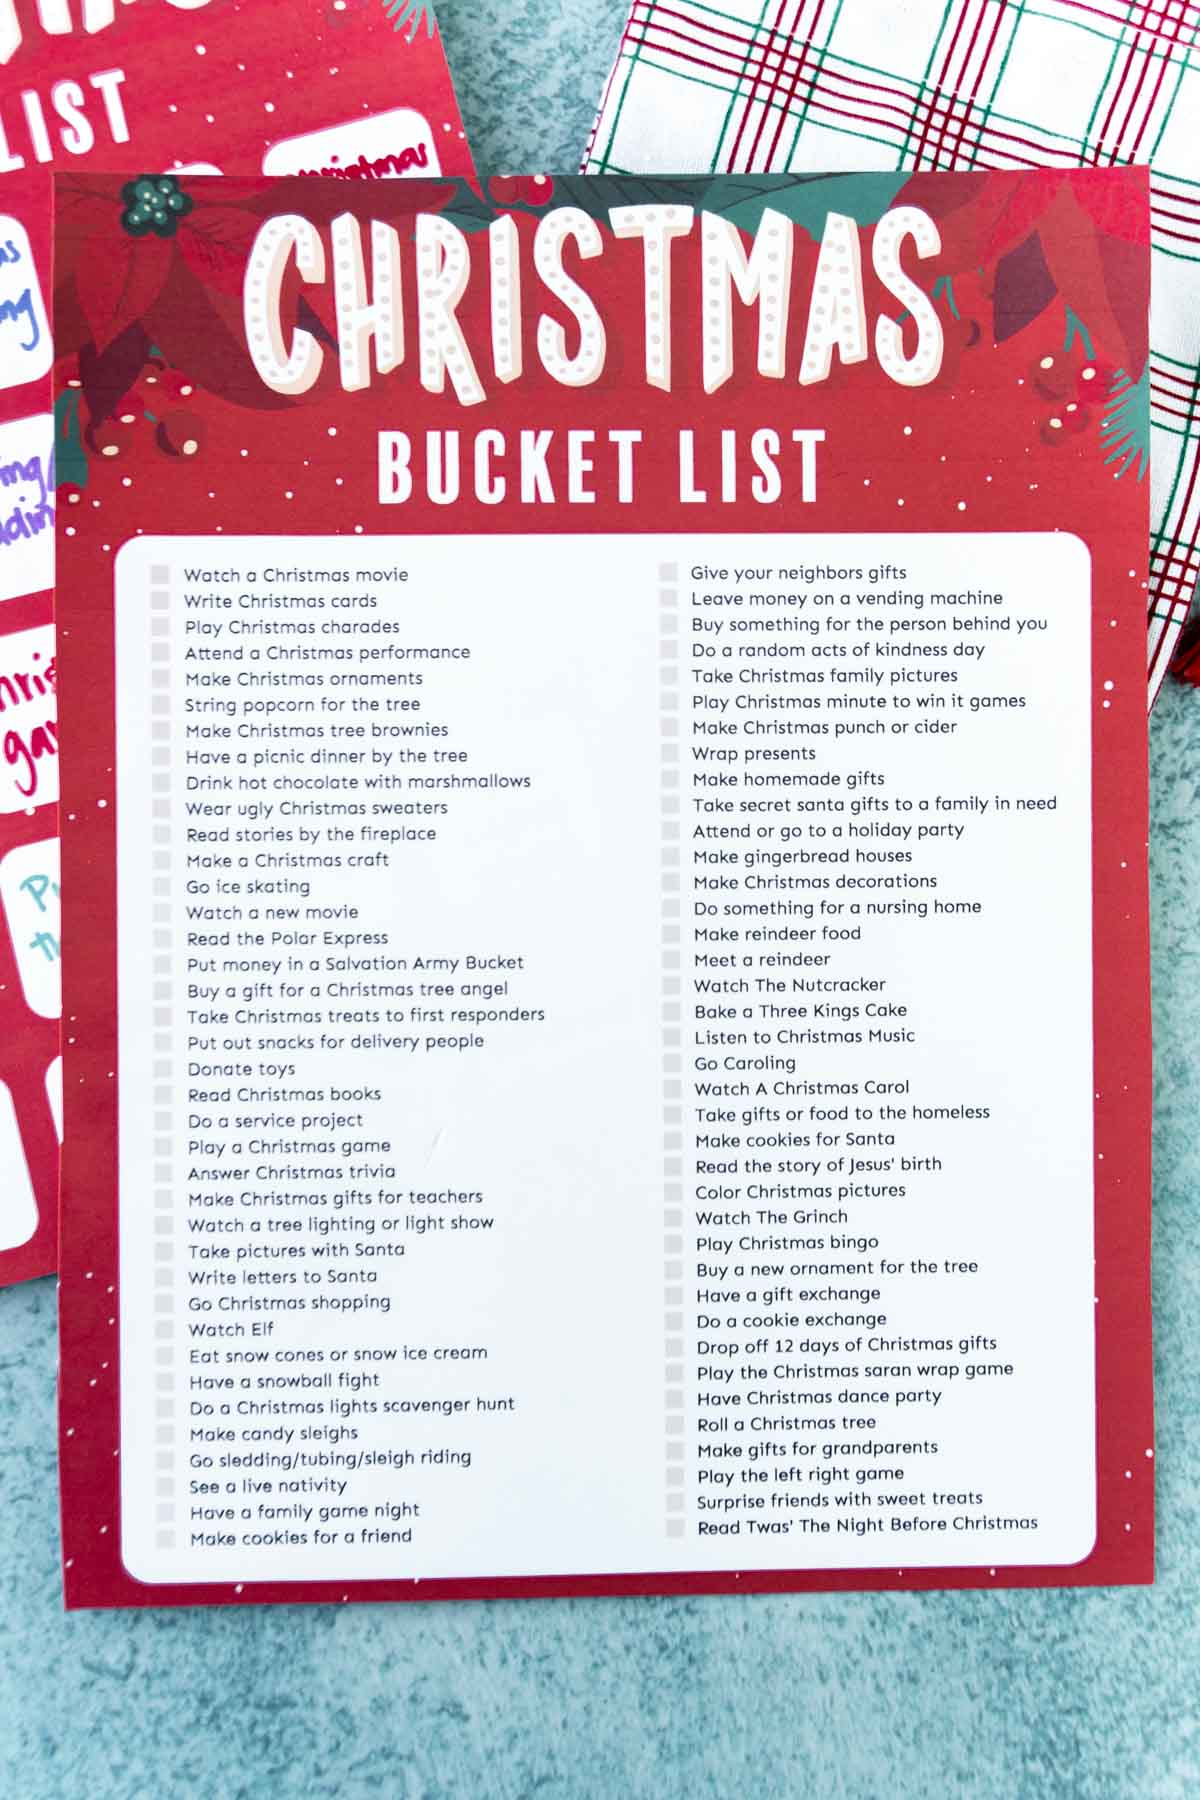 A Christmas bucket list 